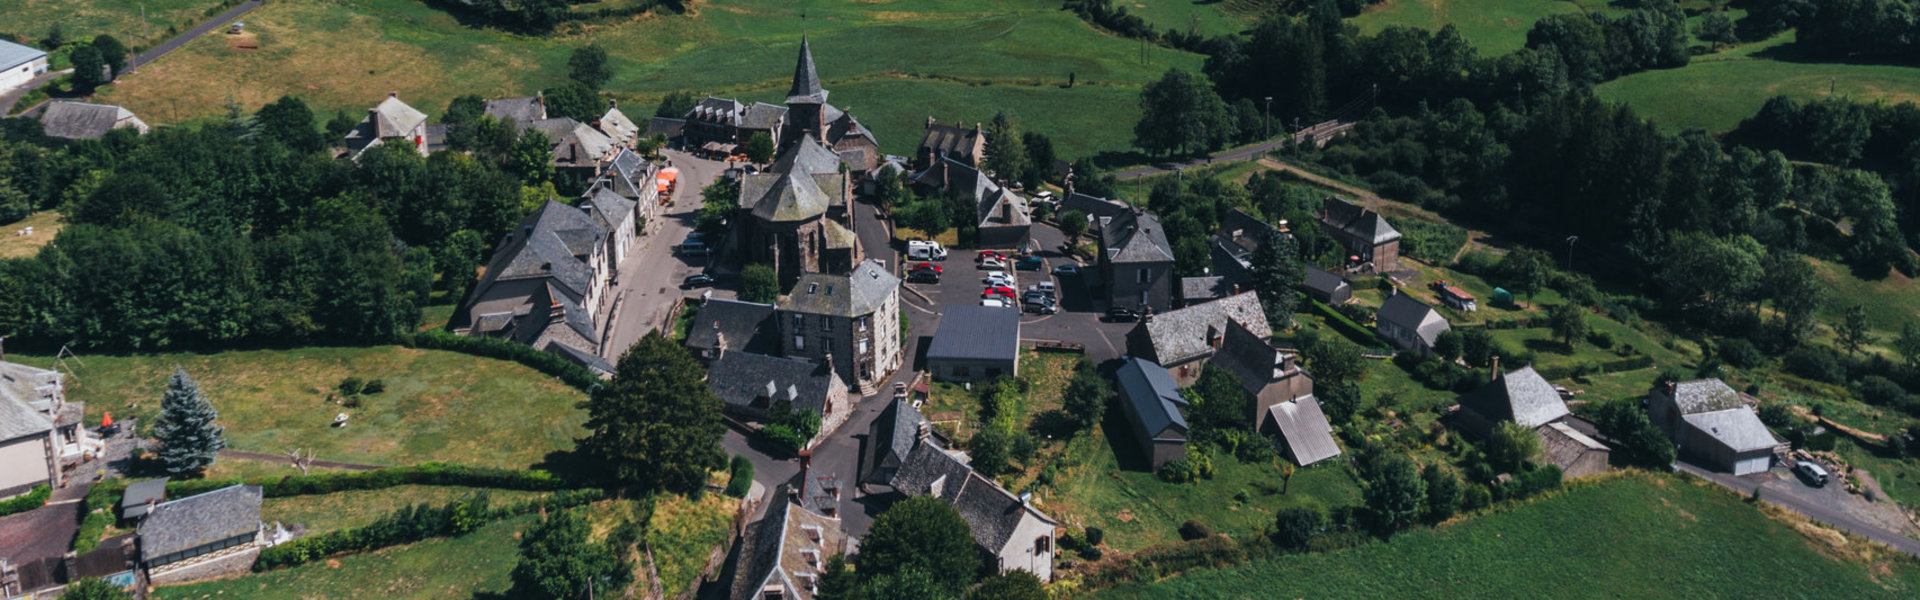 Démarches en Ligne Mairie Puy Marie Cantal Auvergne